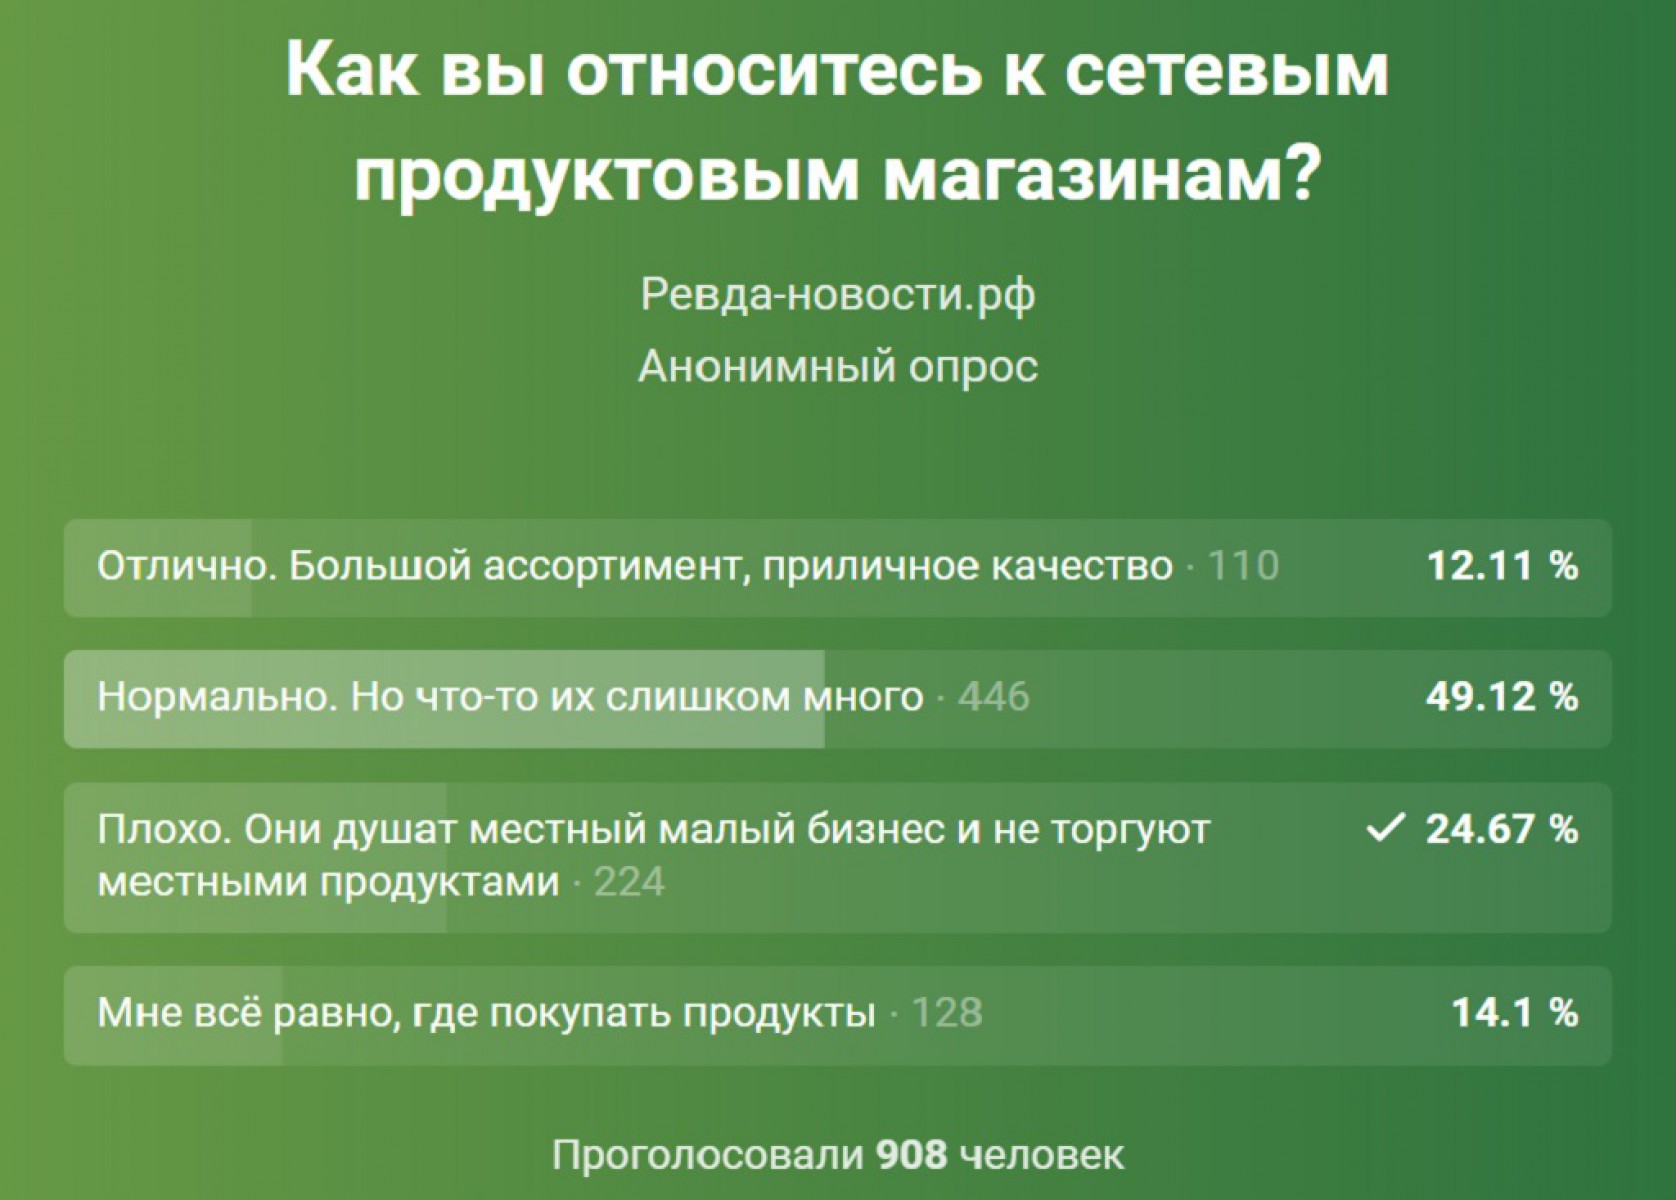 Результаты опроса в группе «Ревда-новости» в соцсети «Вконтакте».